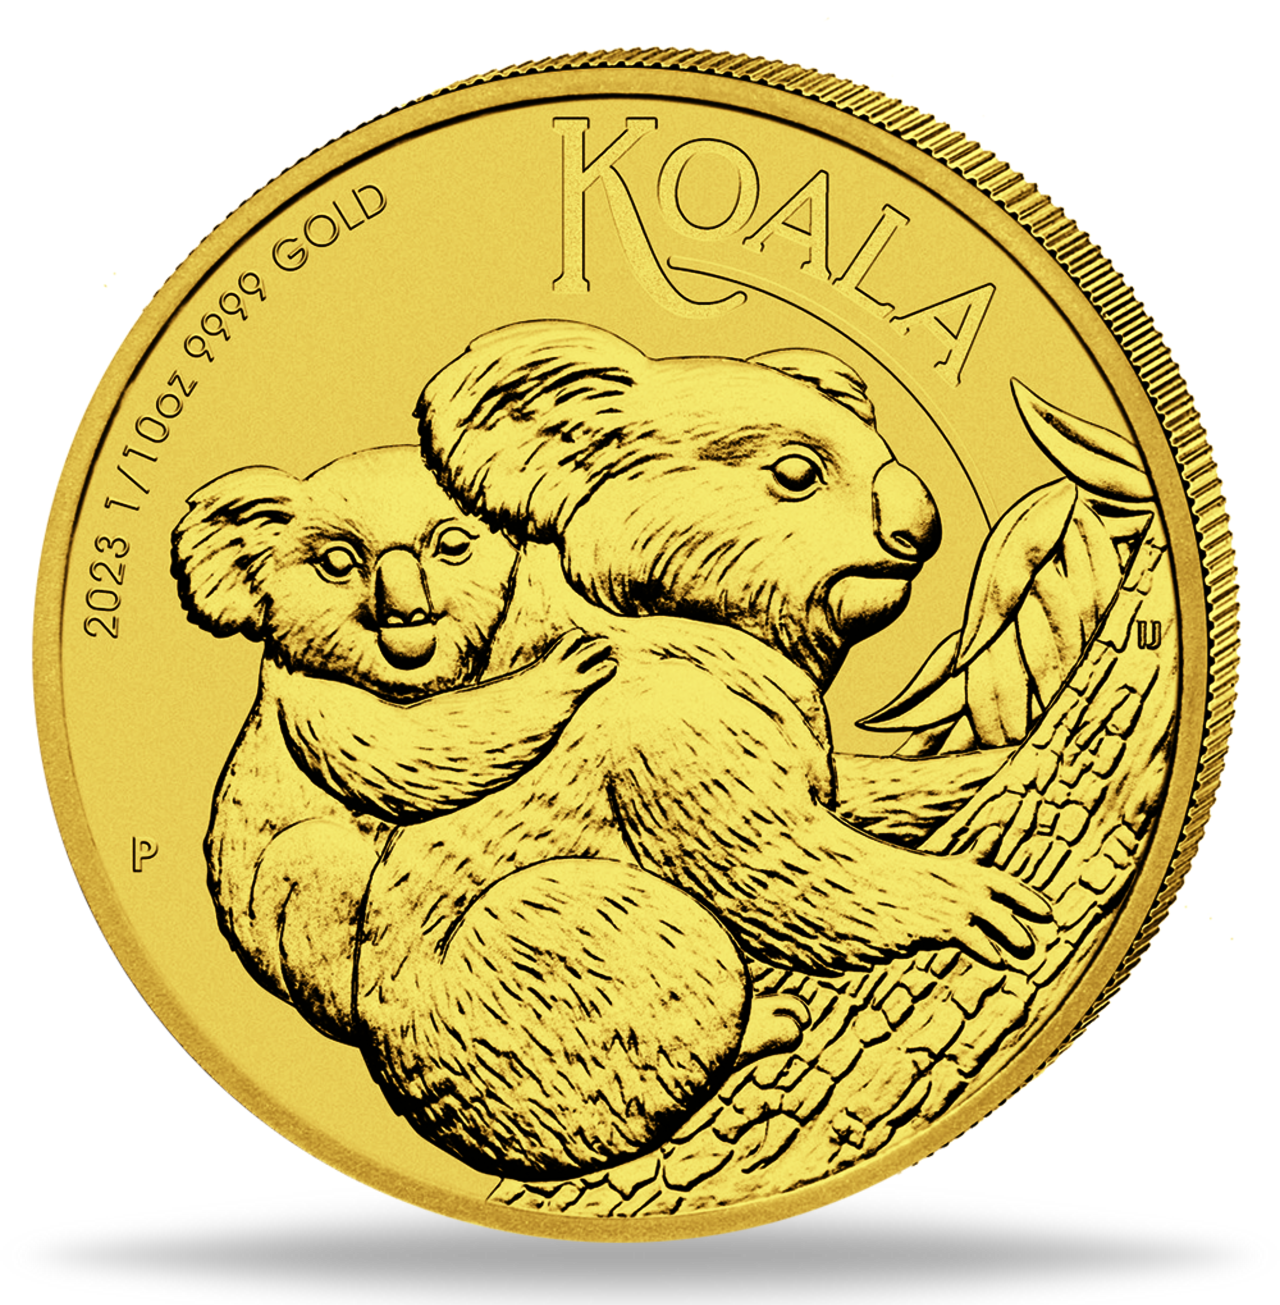 Die Koala Goldmünzen gehören zu den niedlichsten Münzen in der Anlagewelt